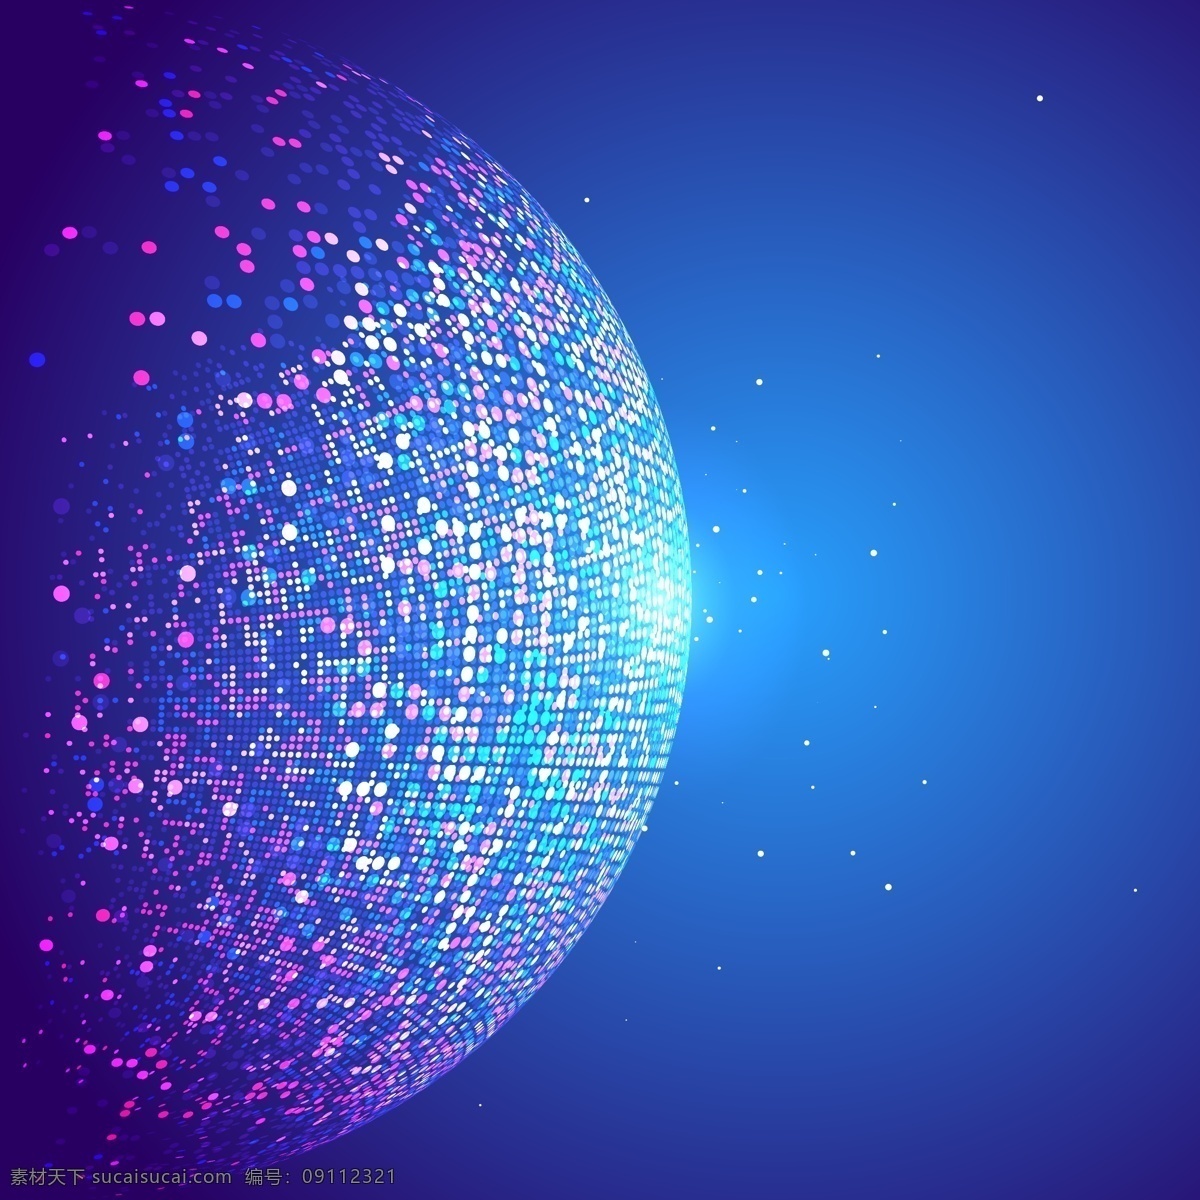 抽象粒子背景 闪烁粒子 抽象地球 碎片 蓝色 科技 高端 蓝色背景 矢量素材